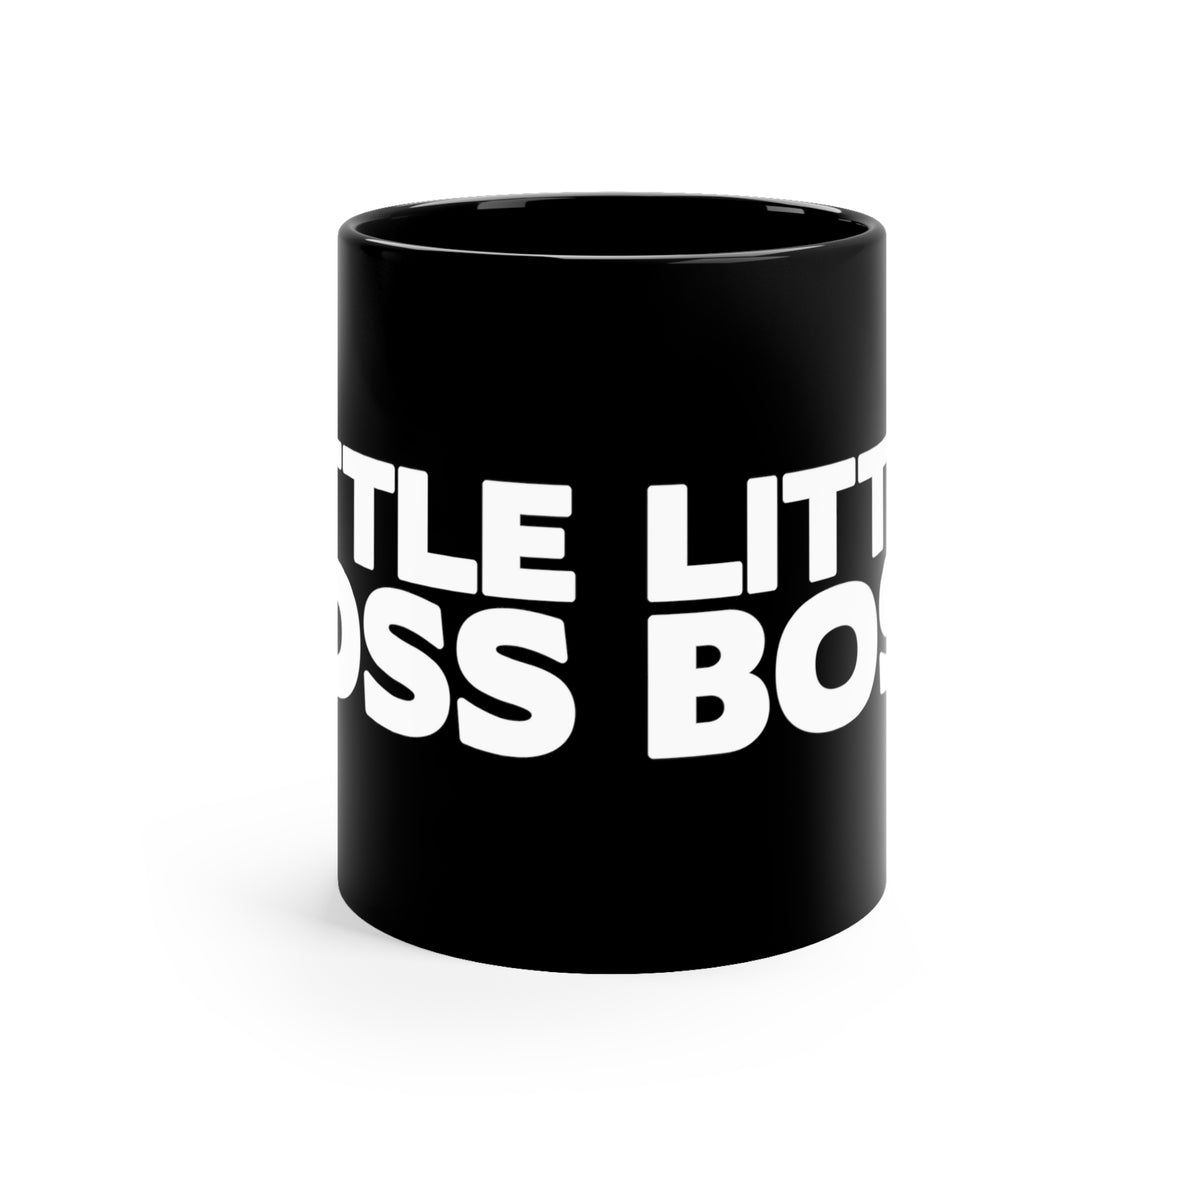 'Little Boss' Mug - Black